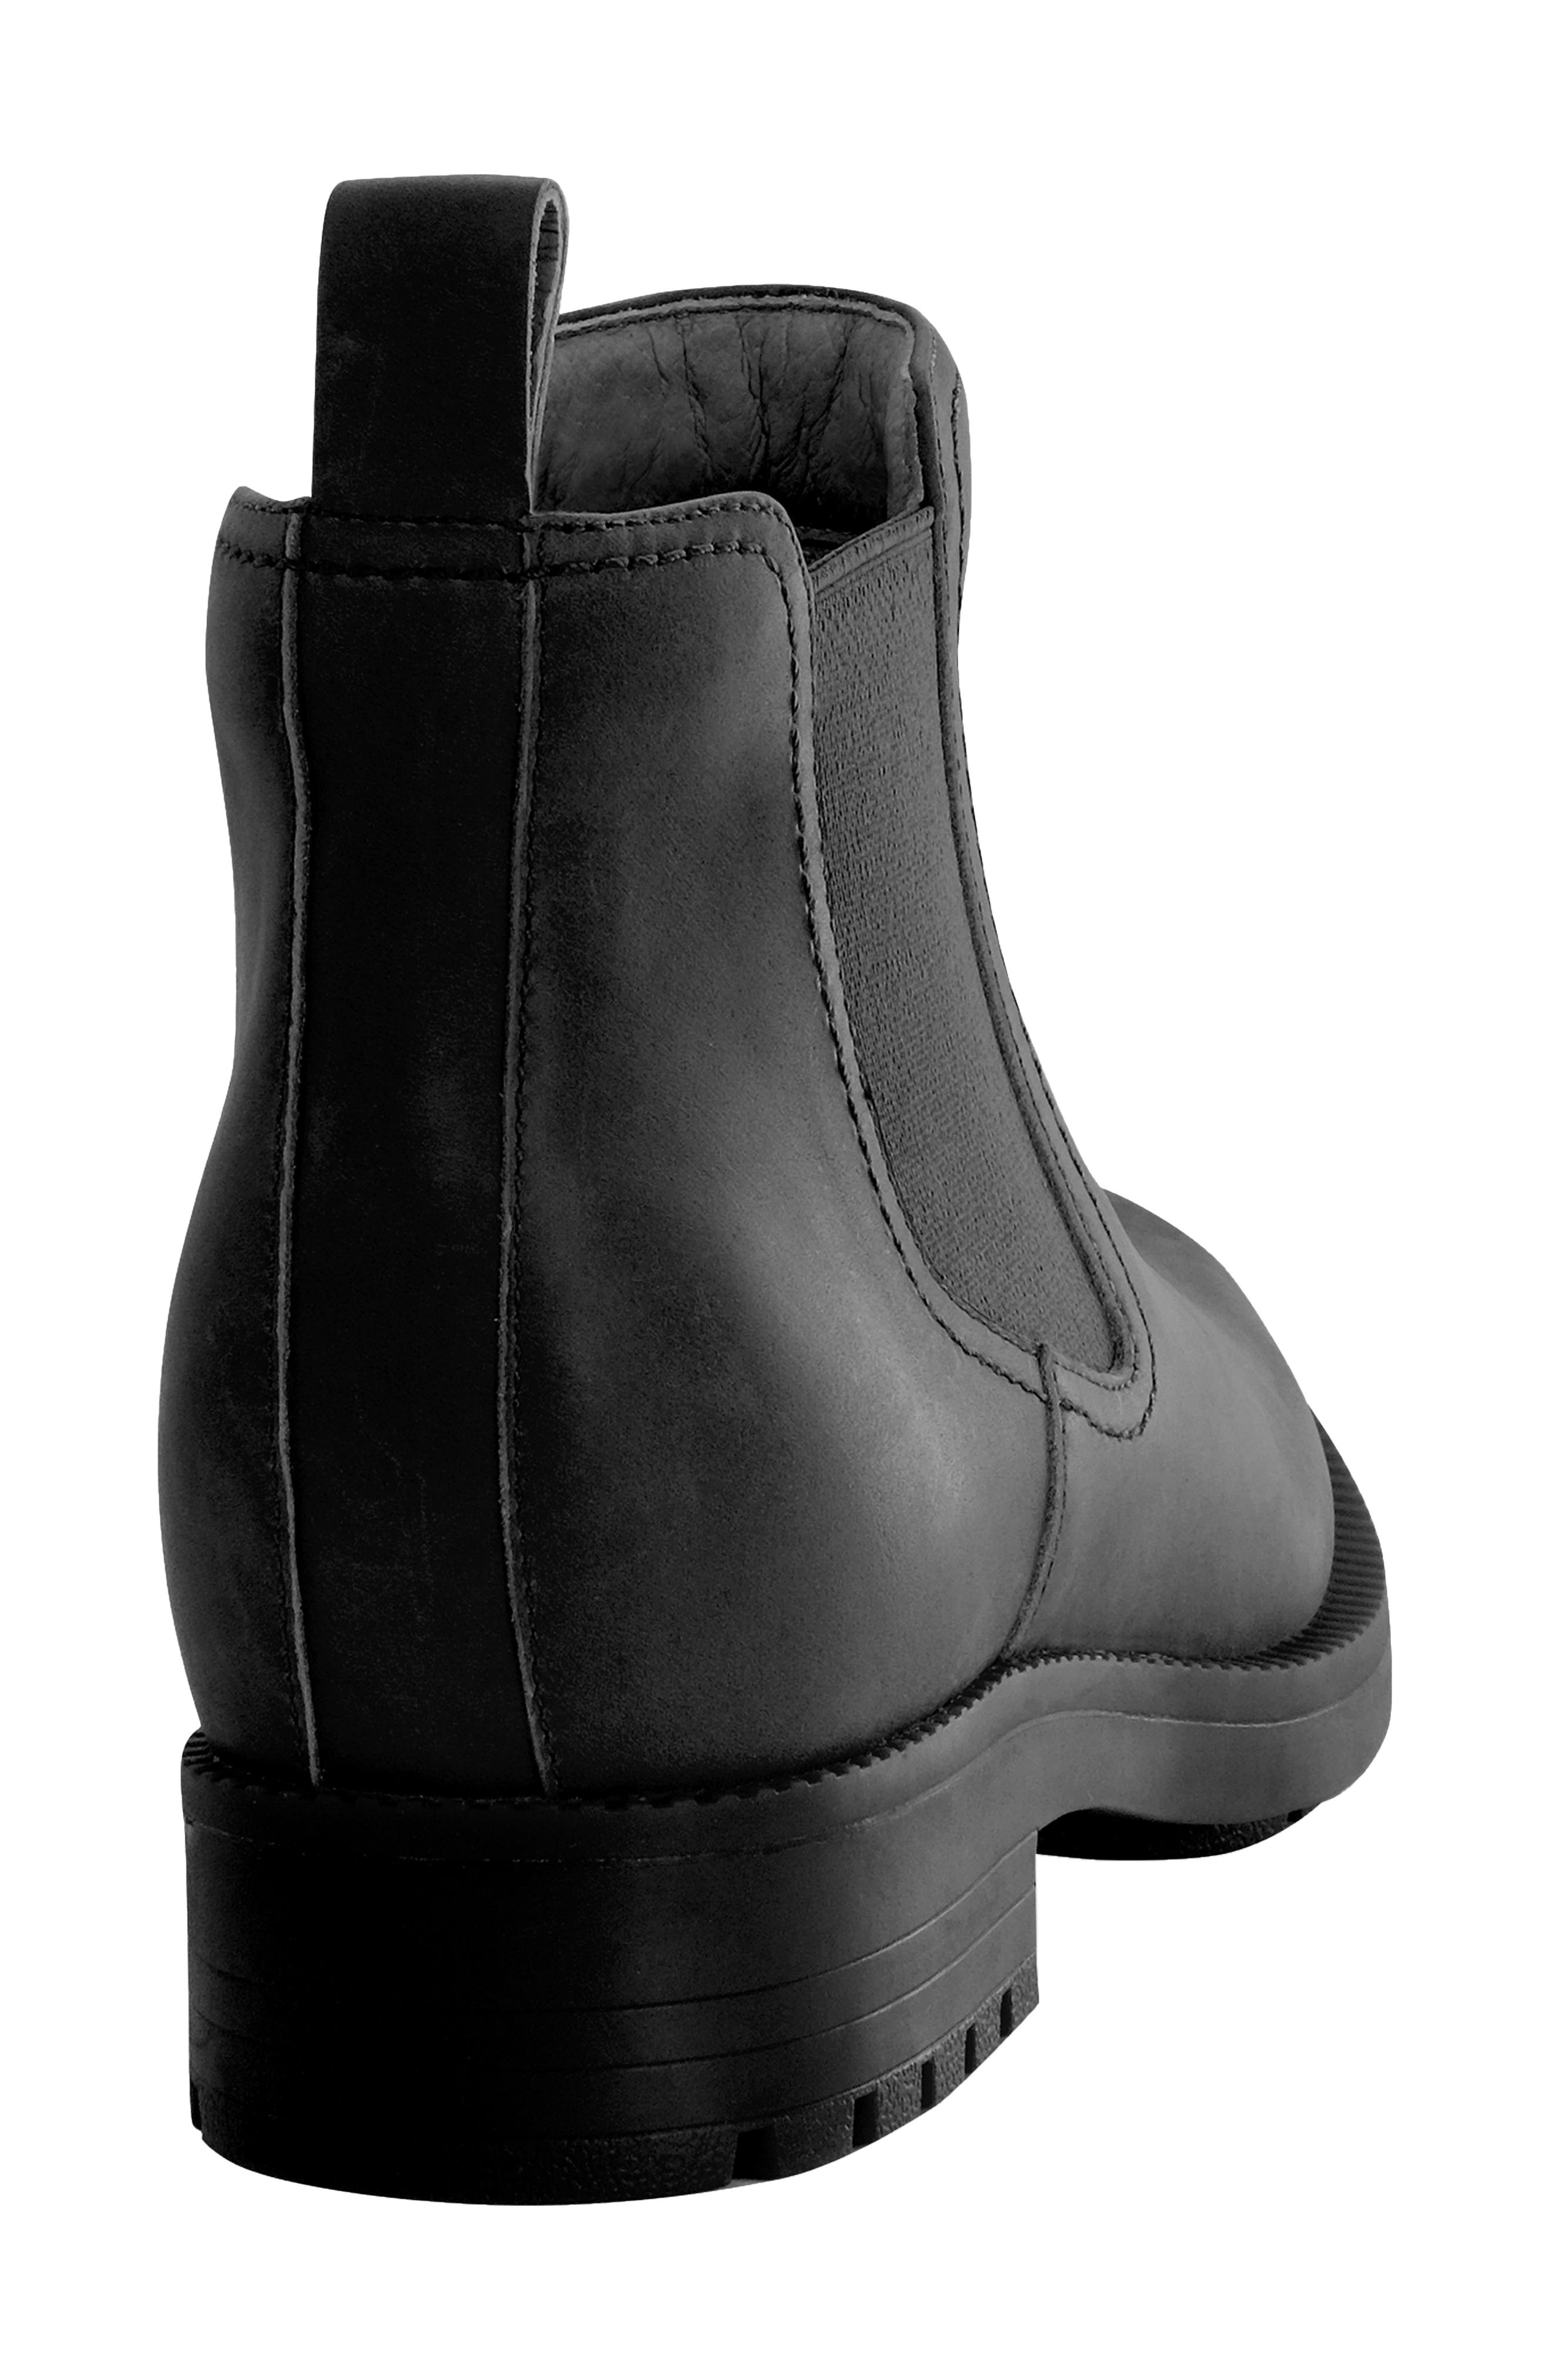 Revitalign Kodiak Orthotic Ankle Chelsea Boot in Black | Smart Closet